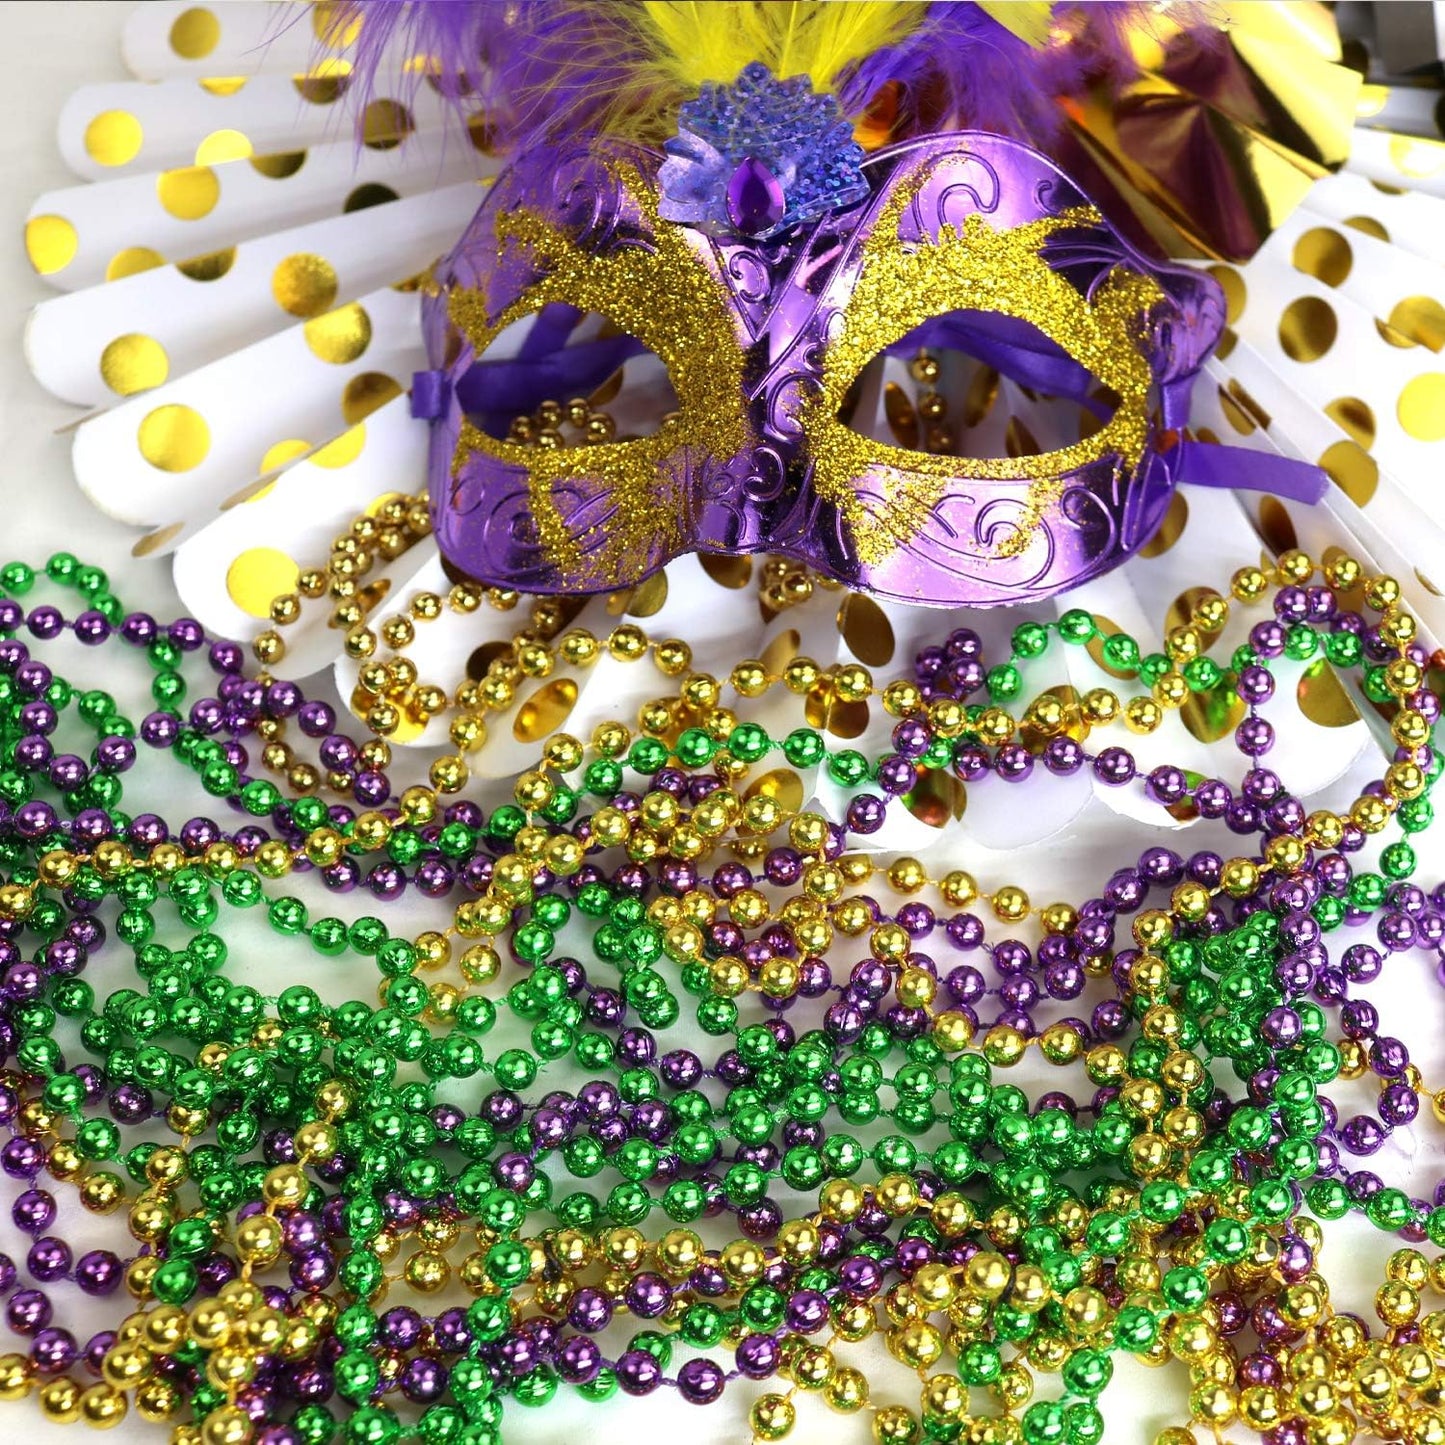 GIFTEXPRESS 12 cuentas de Mardi Gras doradas, verdes y moradas, collares multicolores de 33 pulgadas 